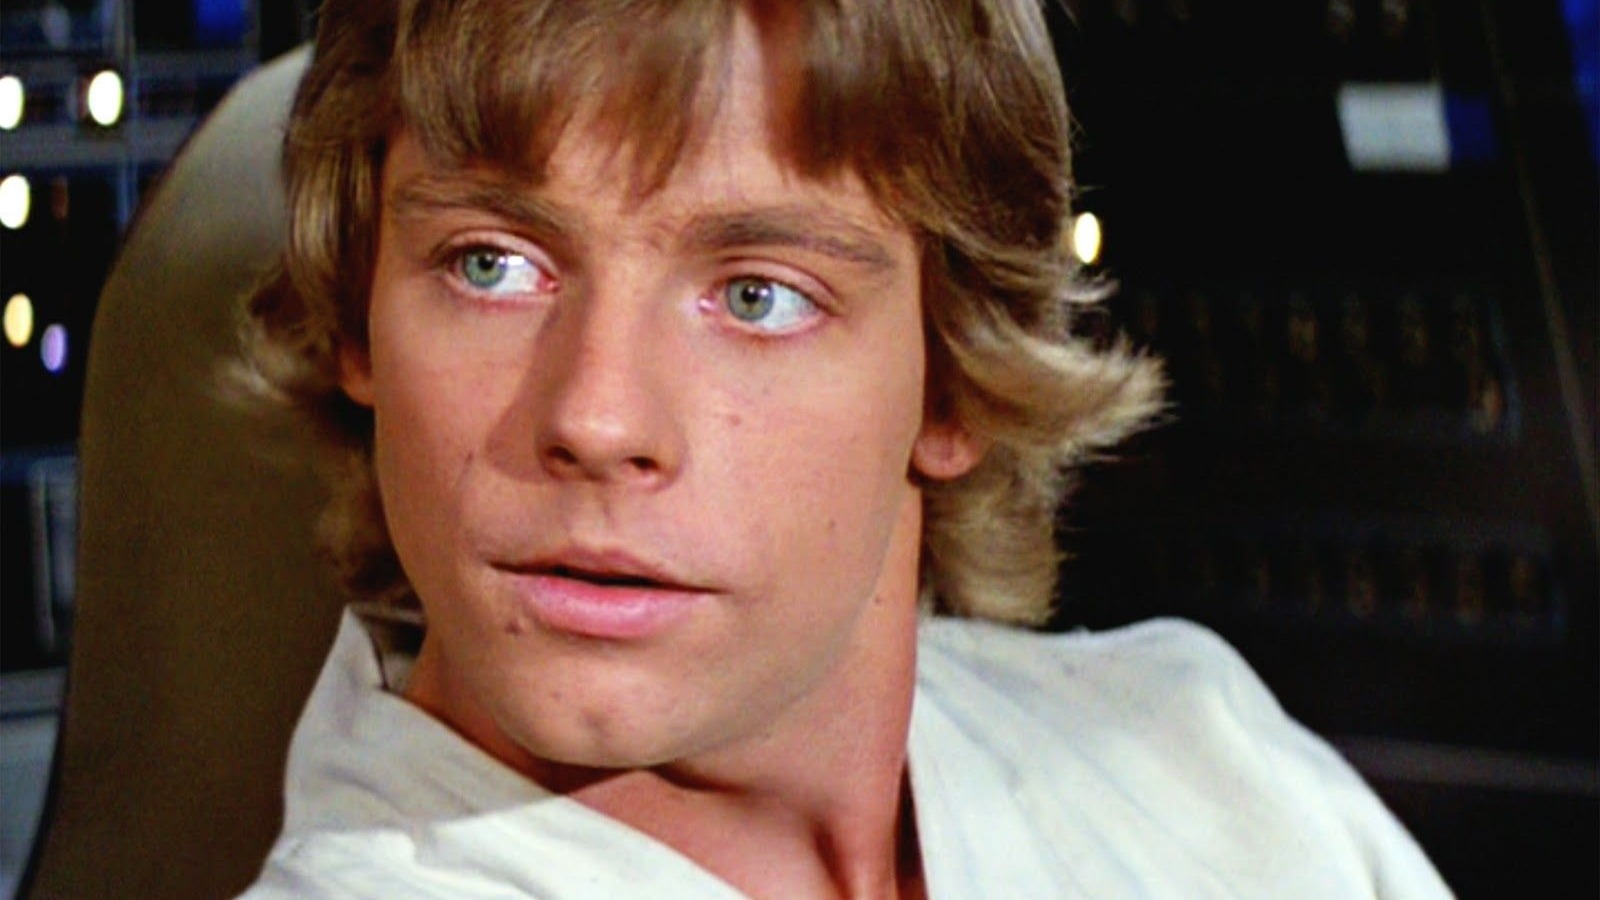 STAR WARS Fan Art Imagines What Luke Skywalker Would Look Like as a Young  Woman — GeekTyrant